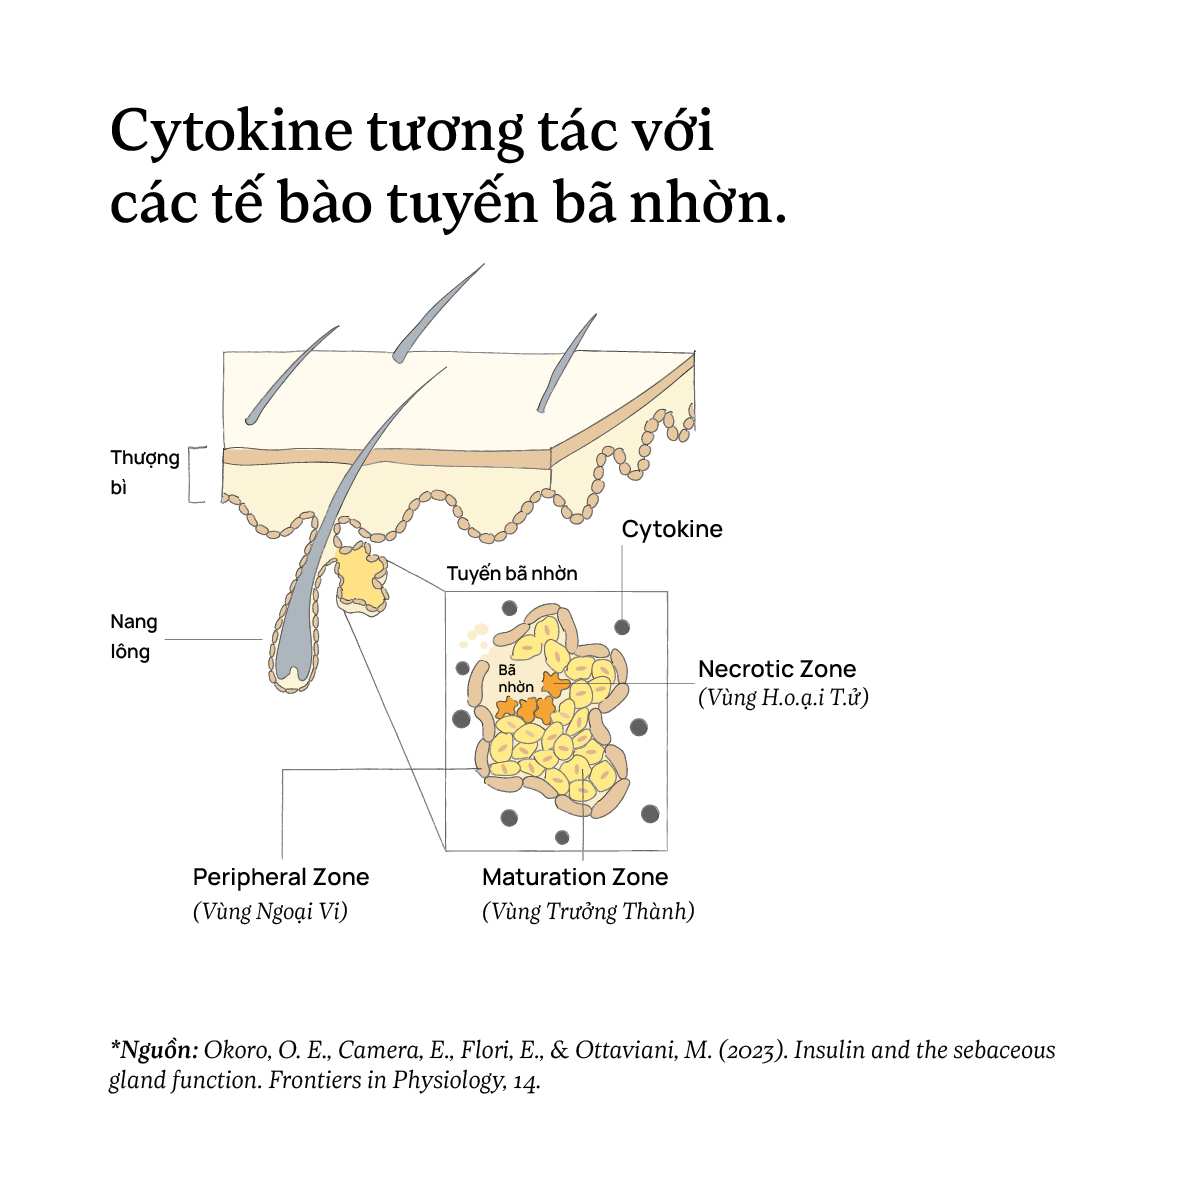 Cytokine tương tác với các tế bào tuyến bã nhờn